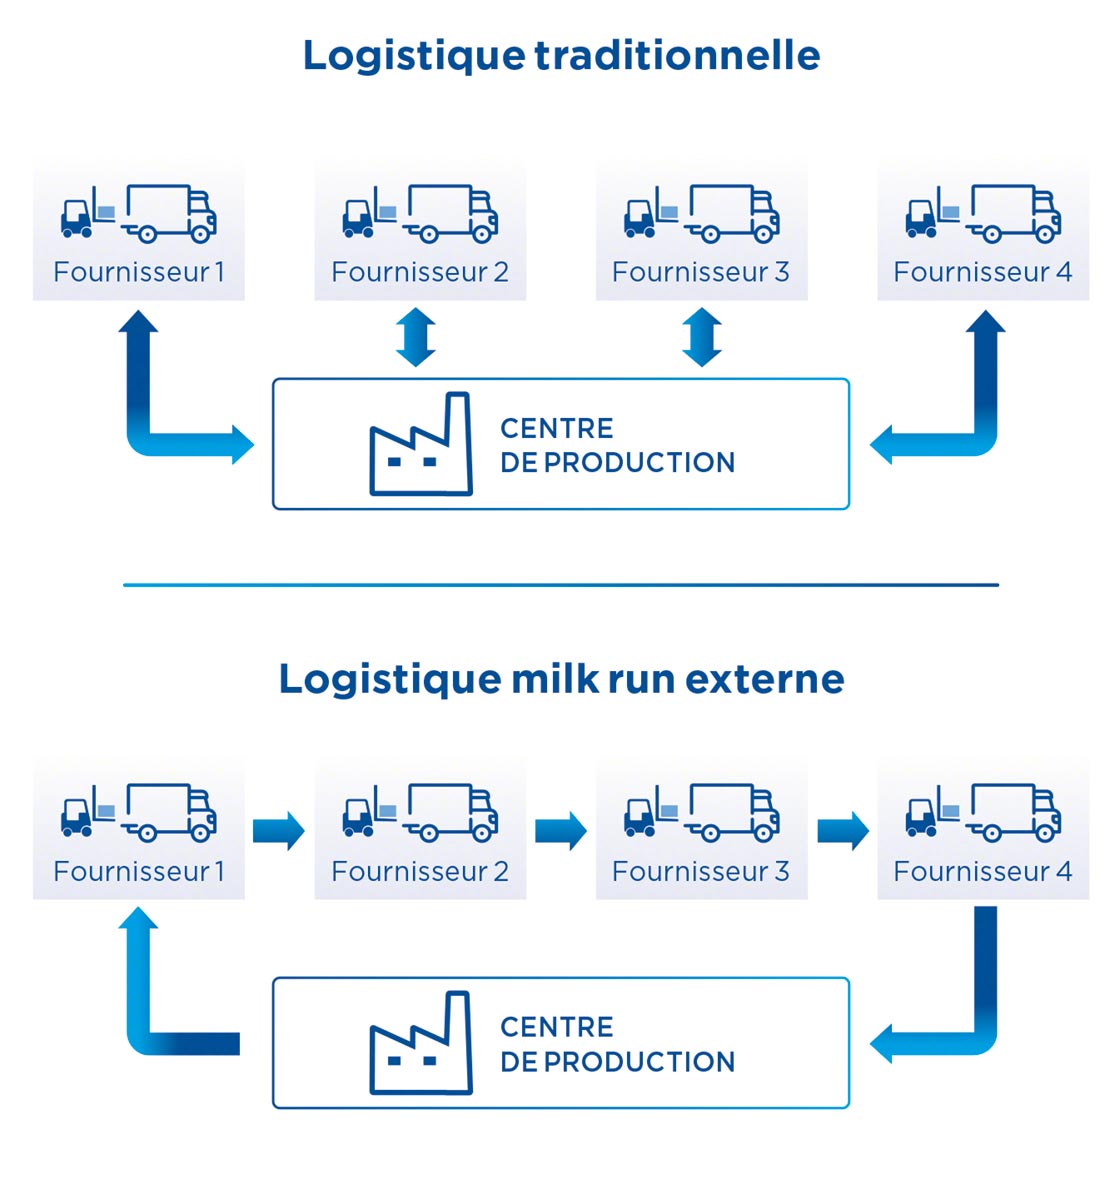 La logistique milk run nécessite une planification prenant en compte les différents arrêts pour charger et décharger les marchandises